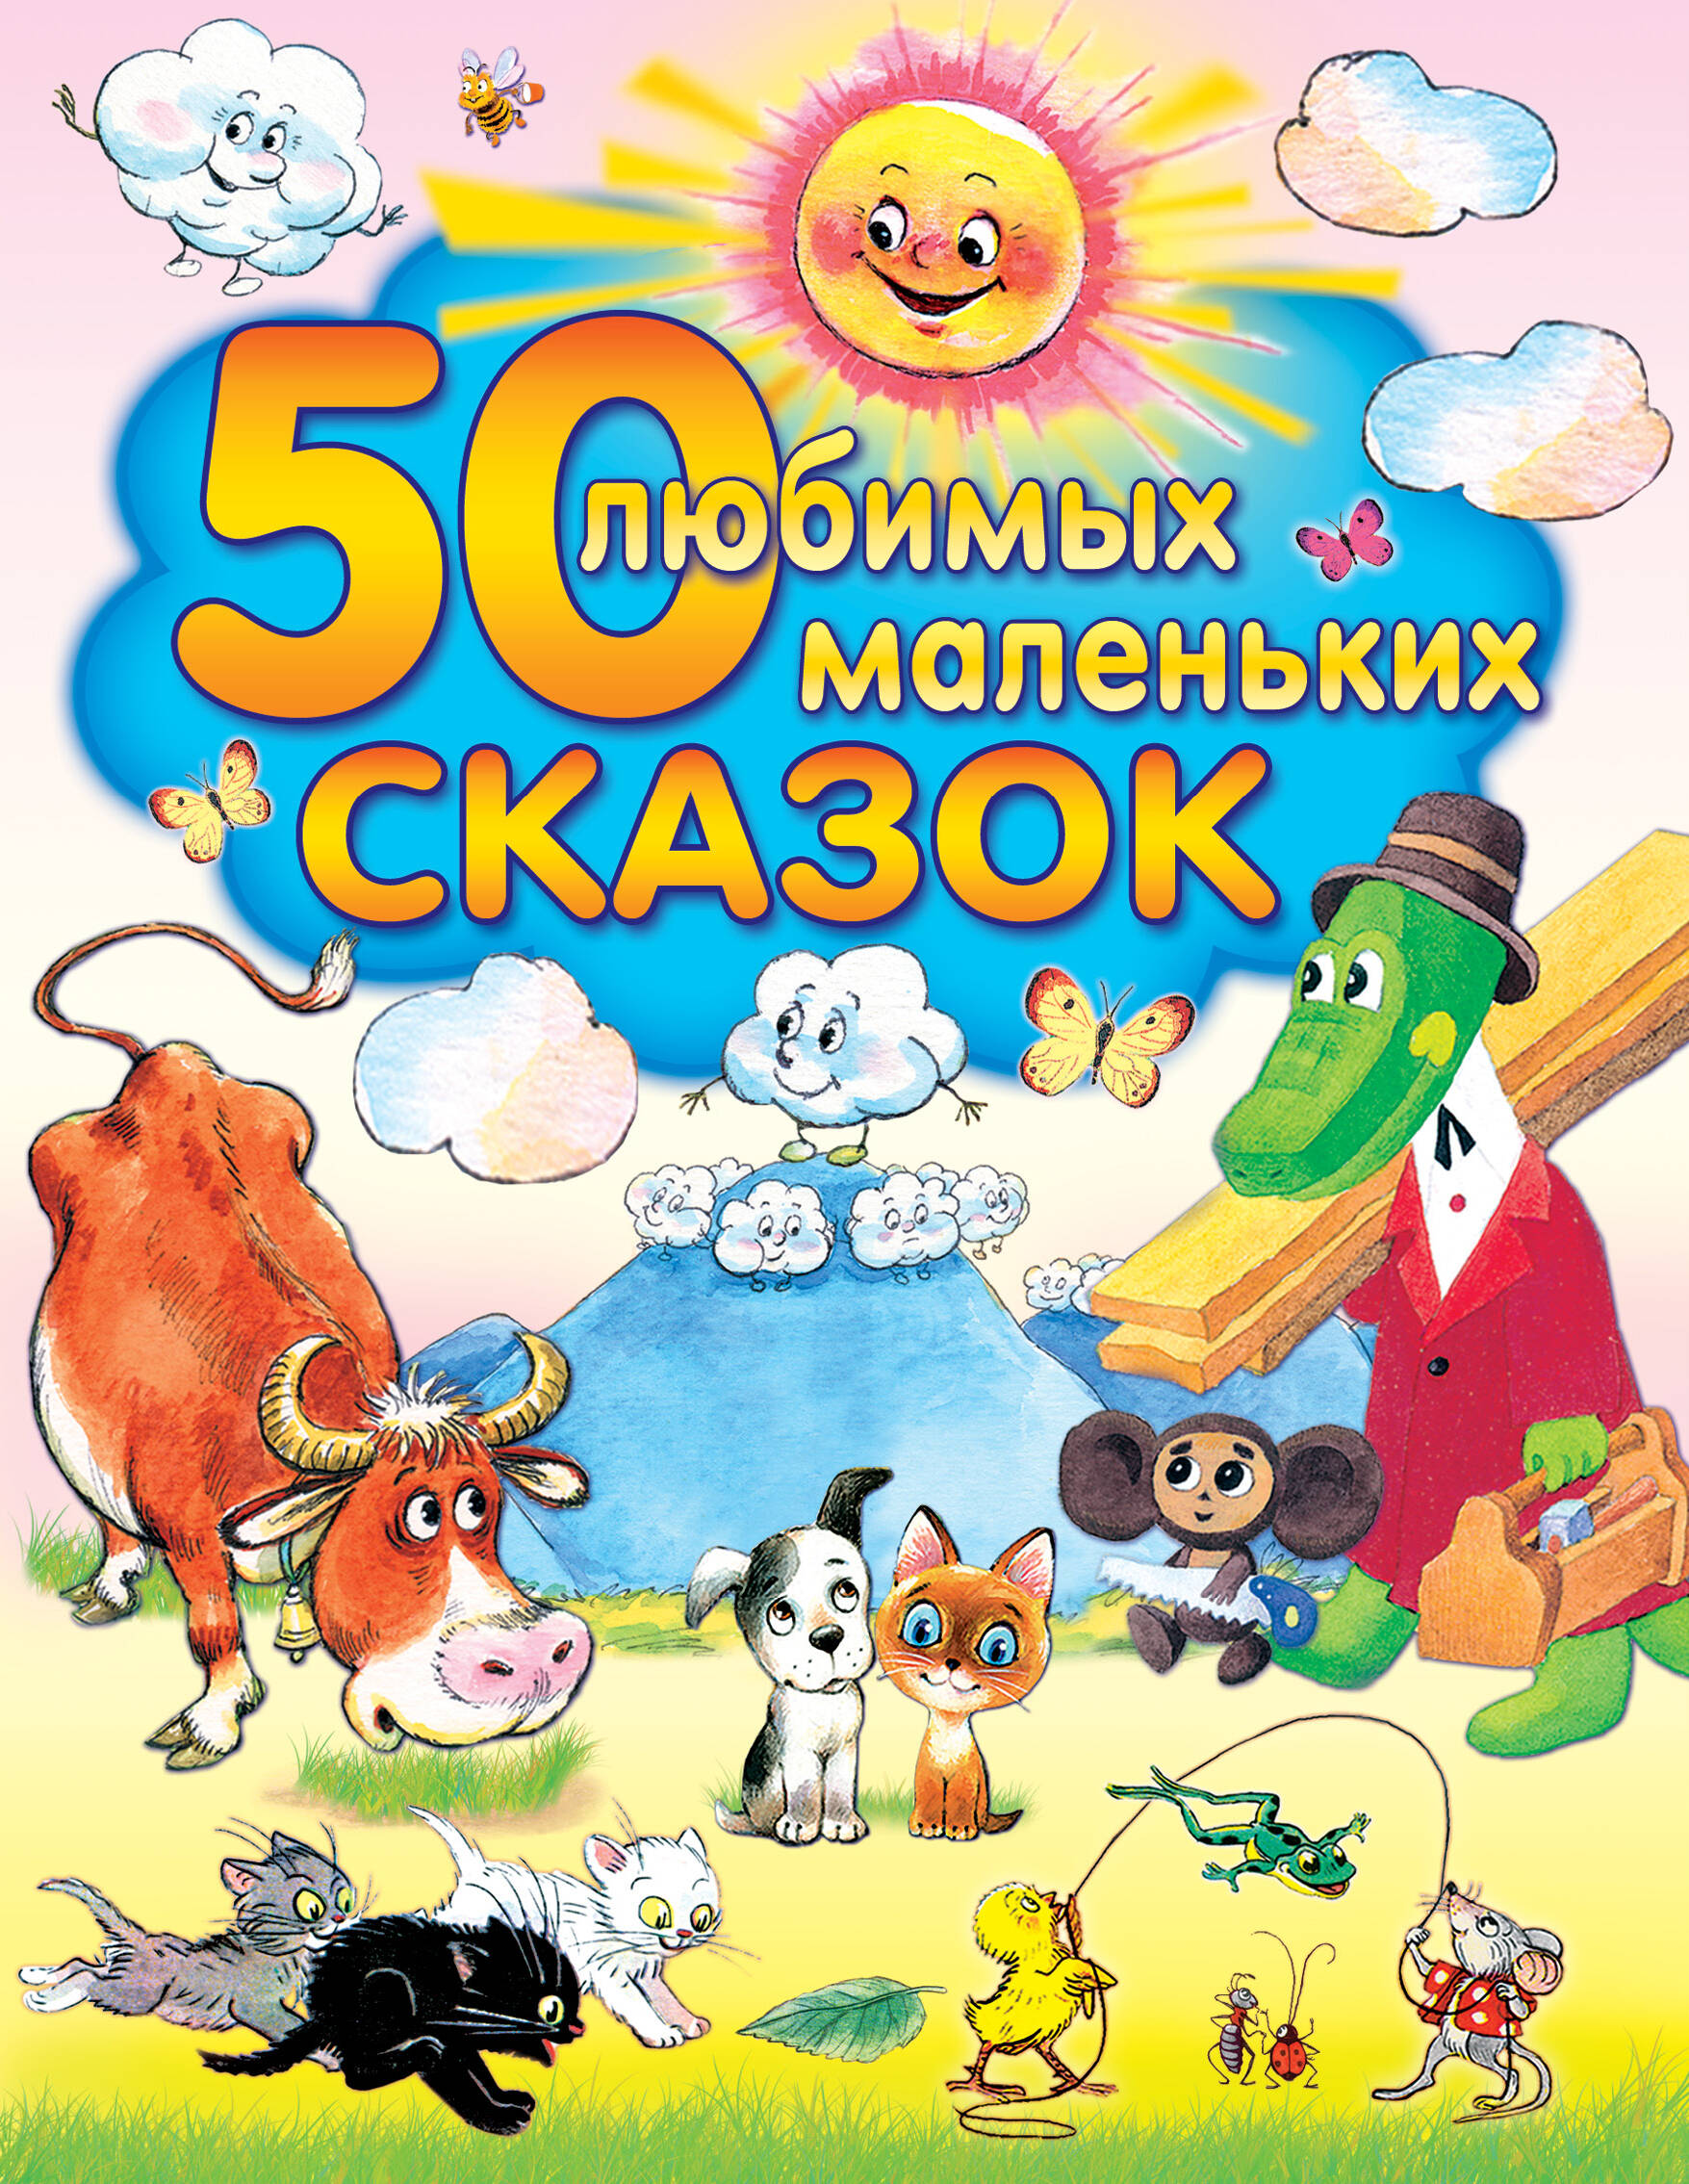 цена Толстой Алексей Николаевич 50 любимых маленьких сказок